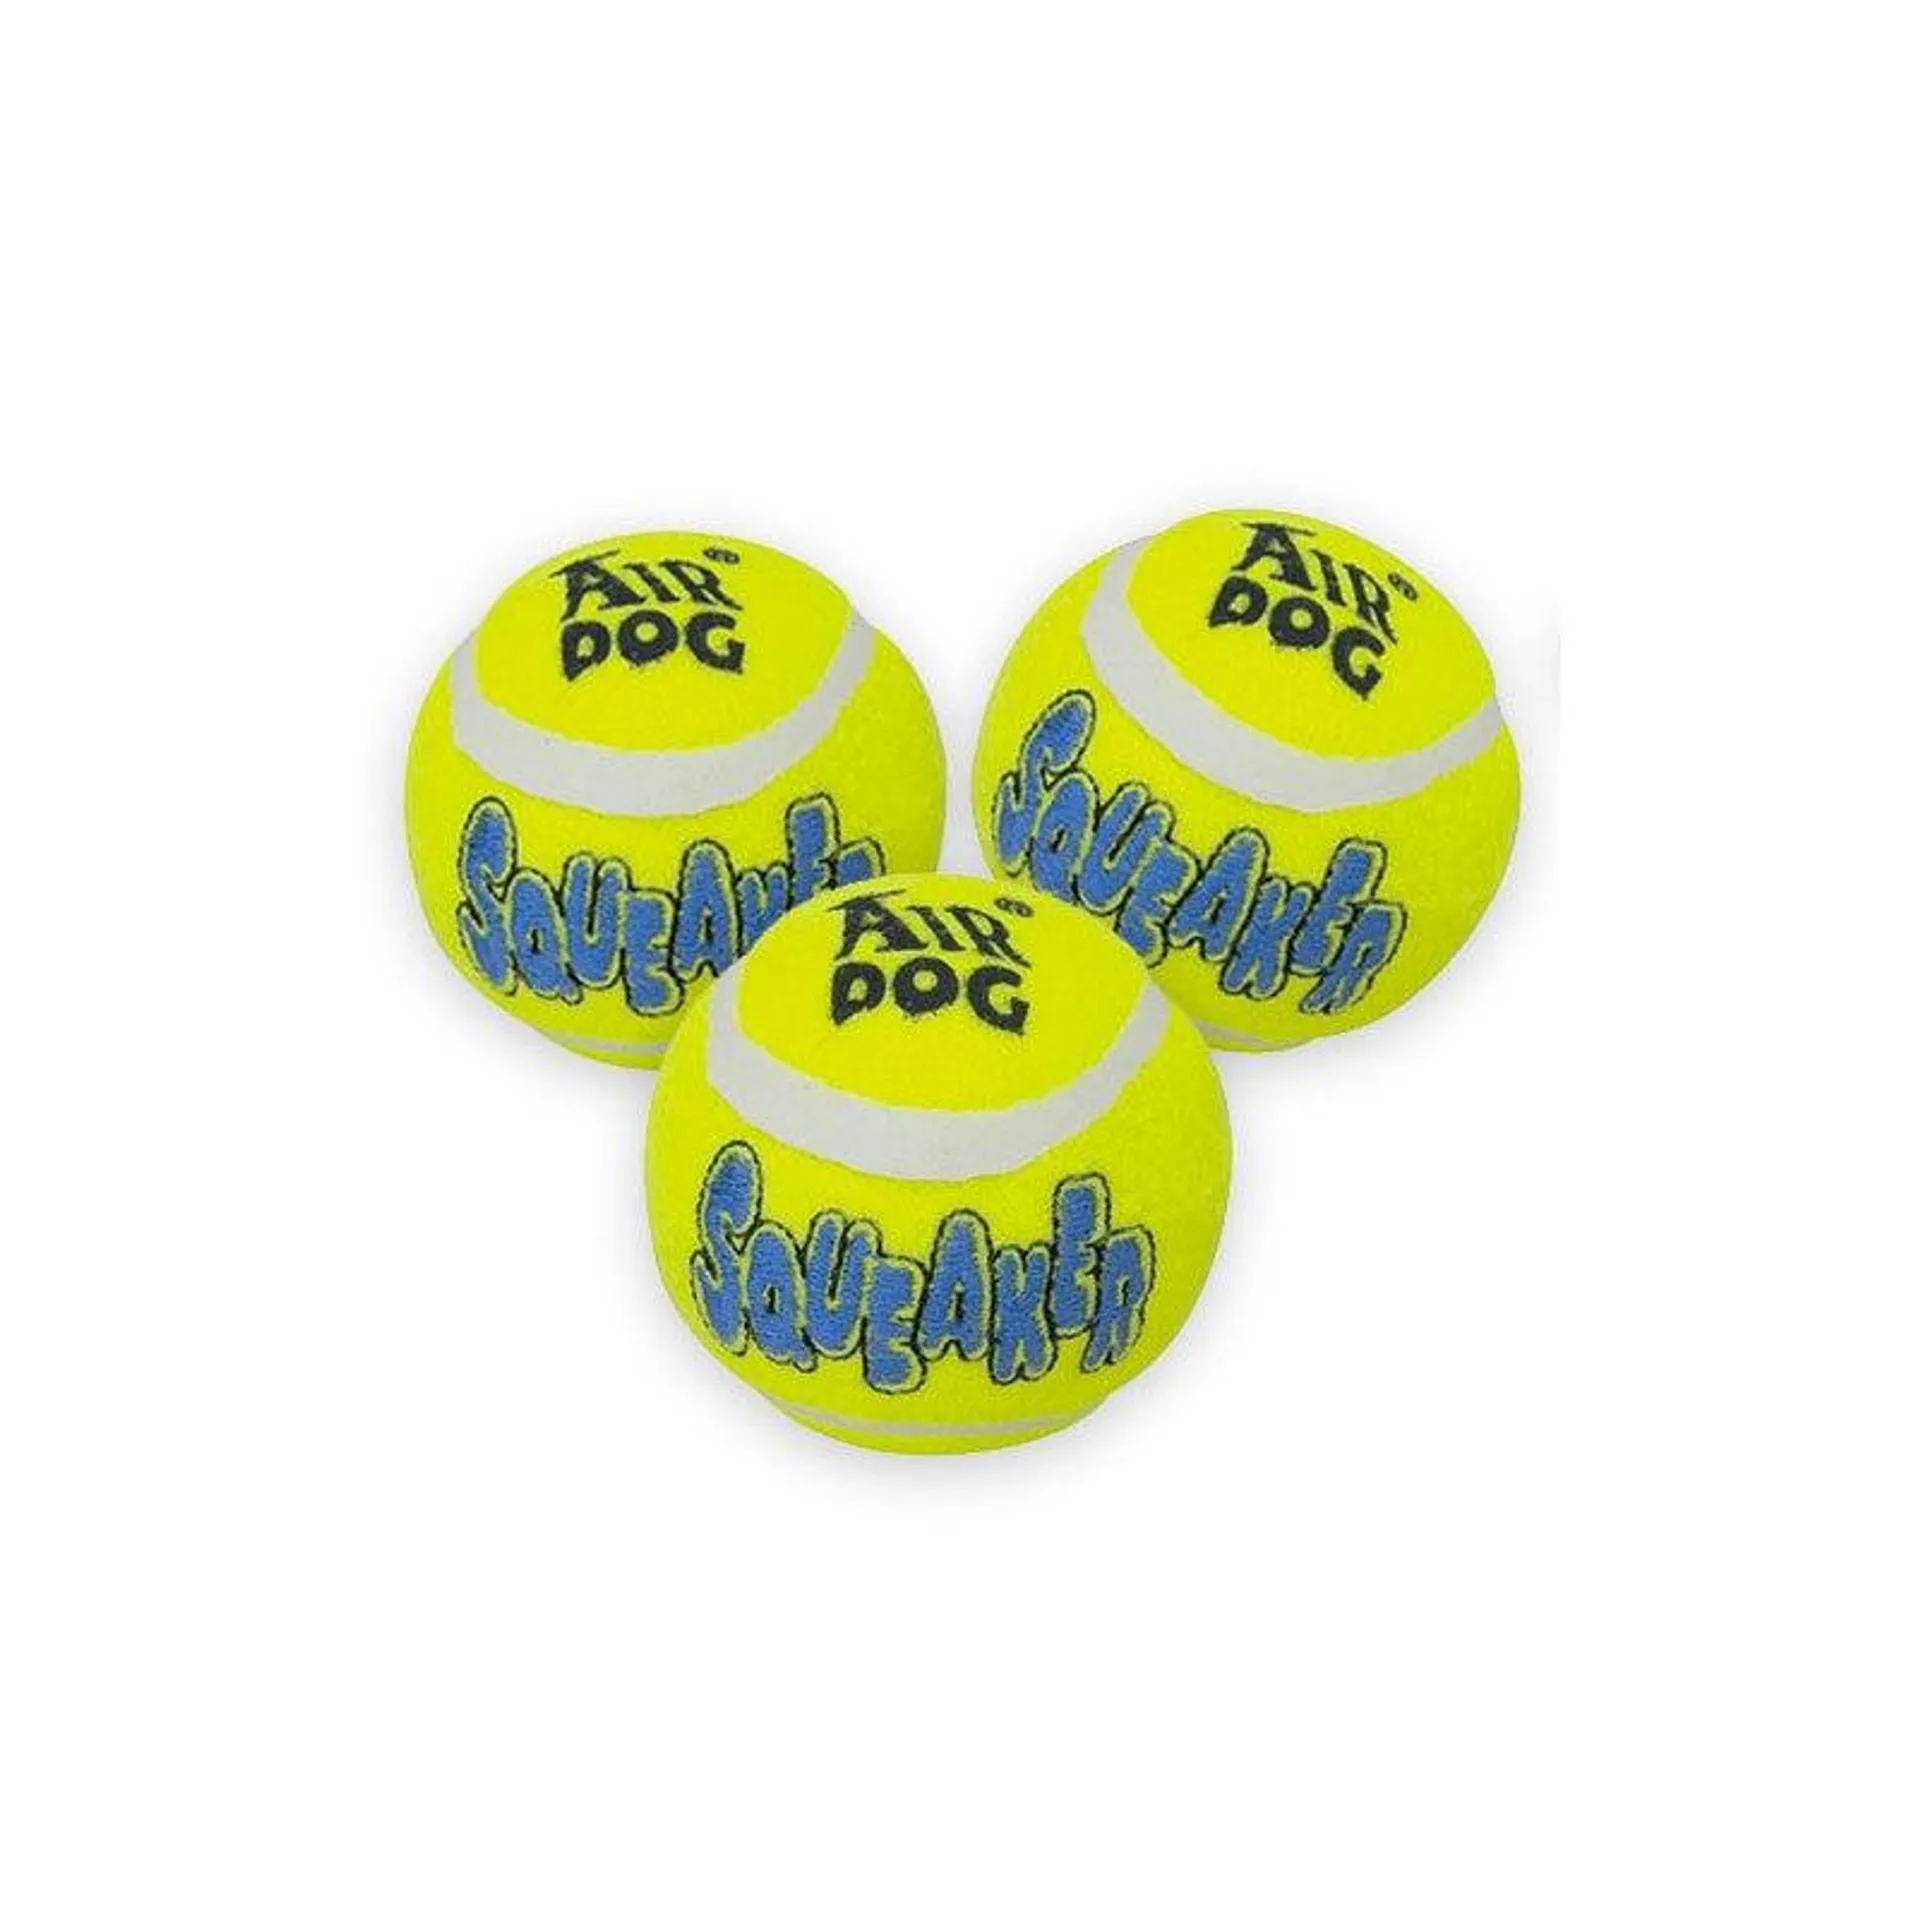 Pelota de tennis Kong (pack de 3 pelotas pequeñas)